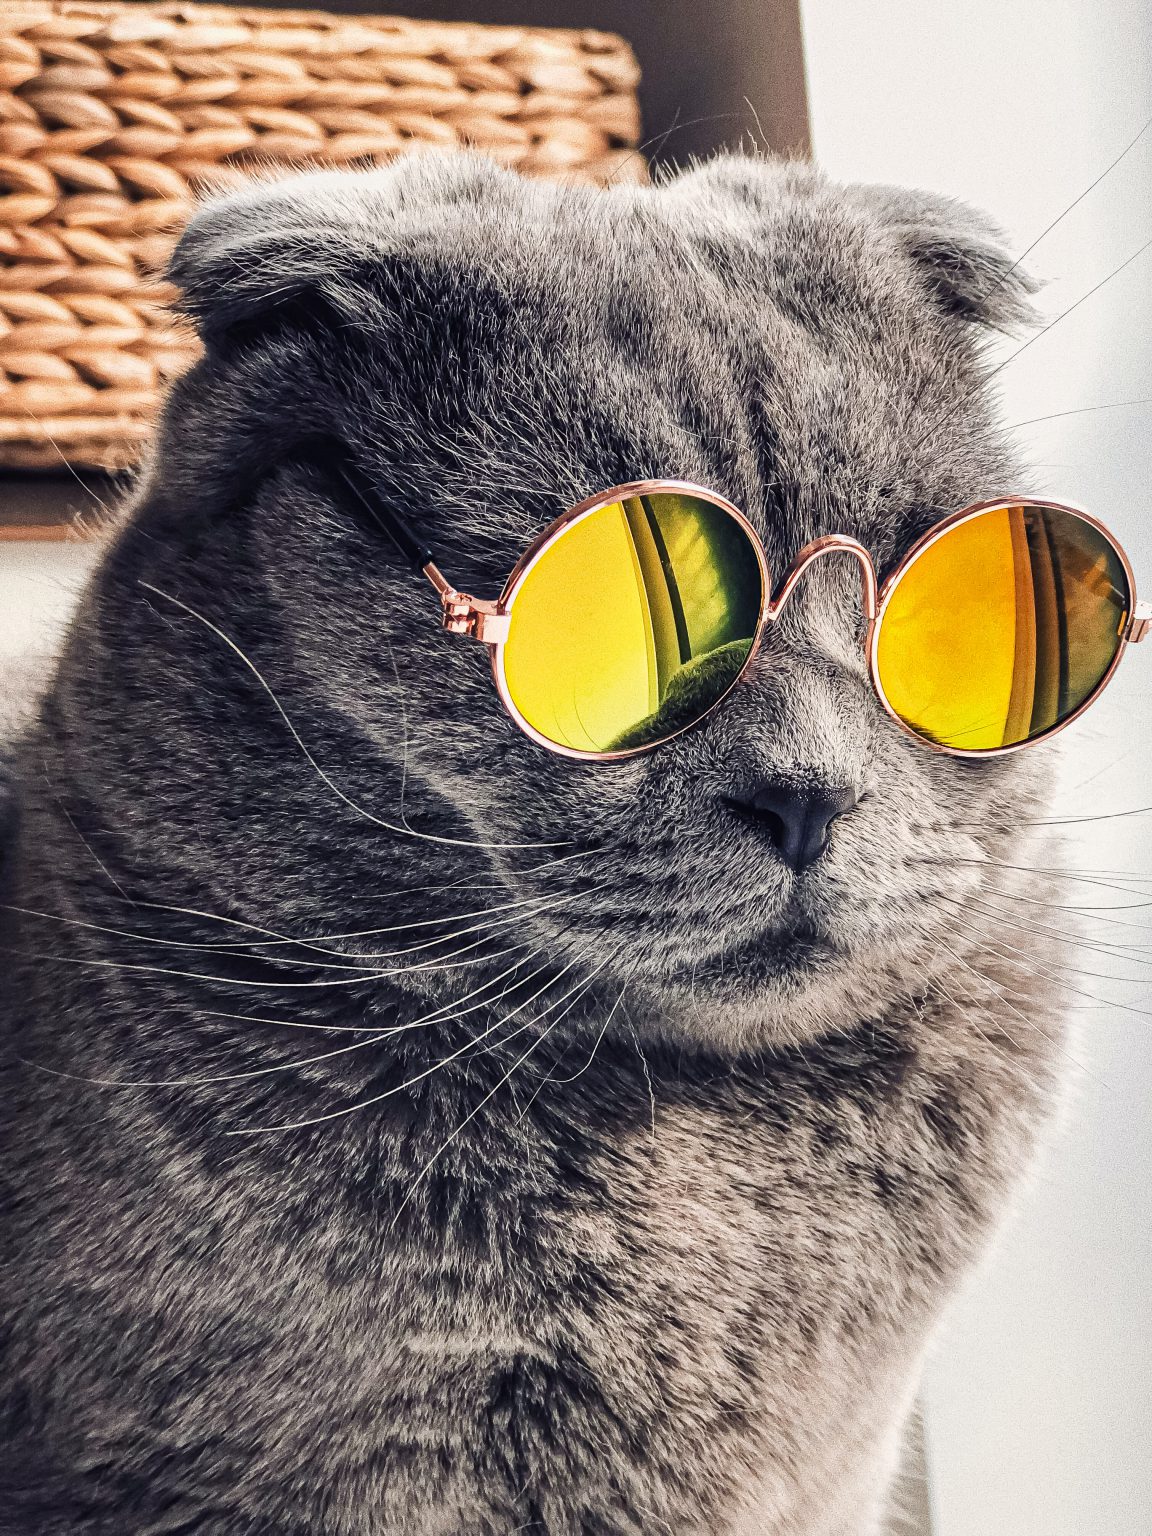 Kucing Lucu Pakai kacamata Bulat